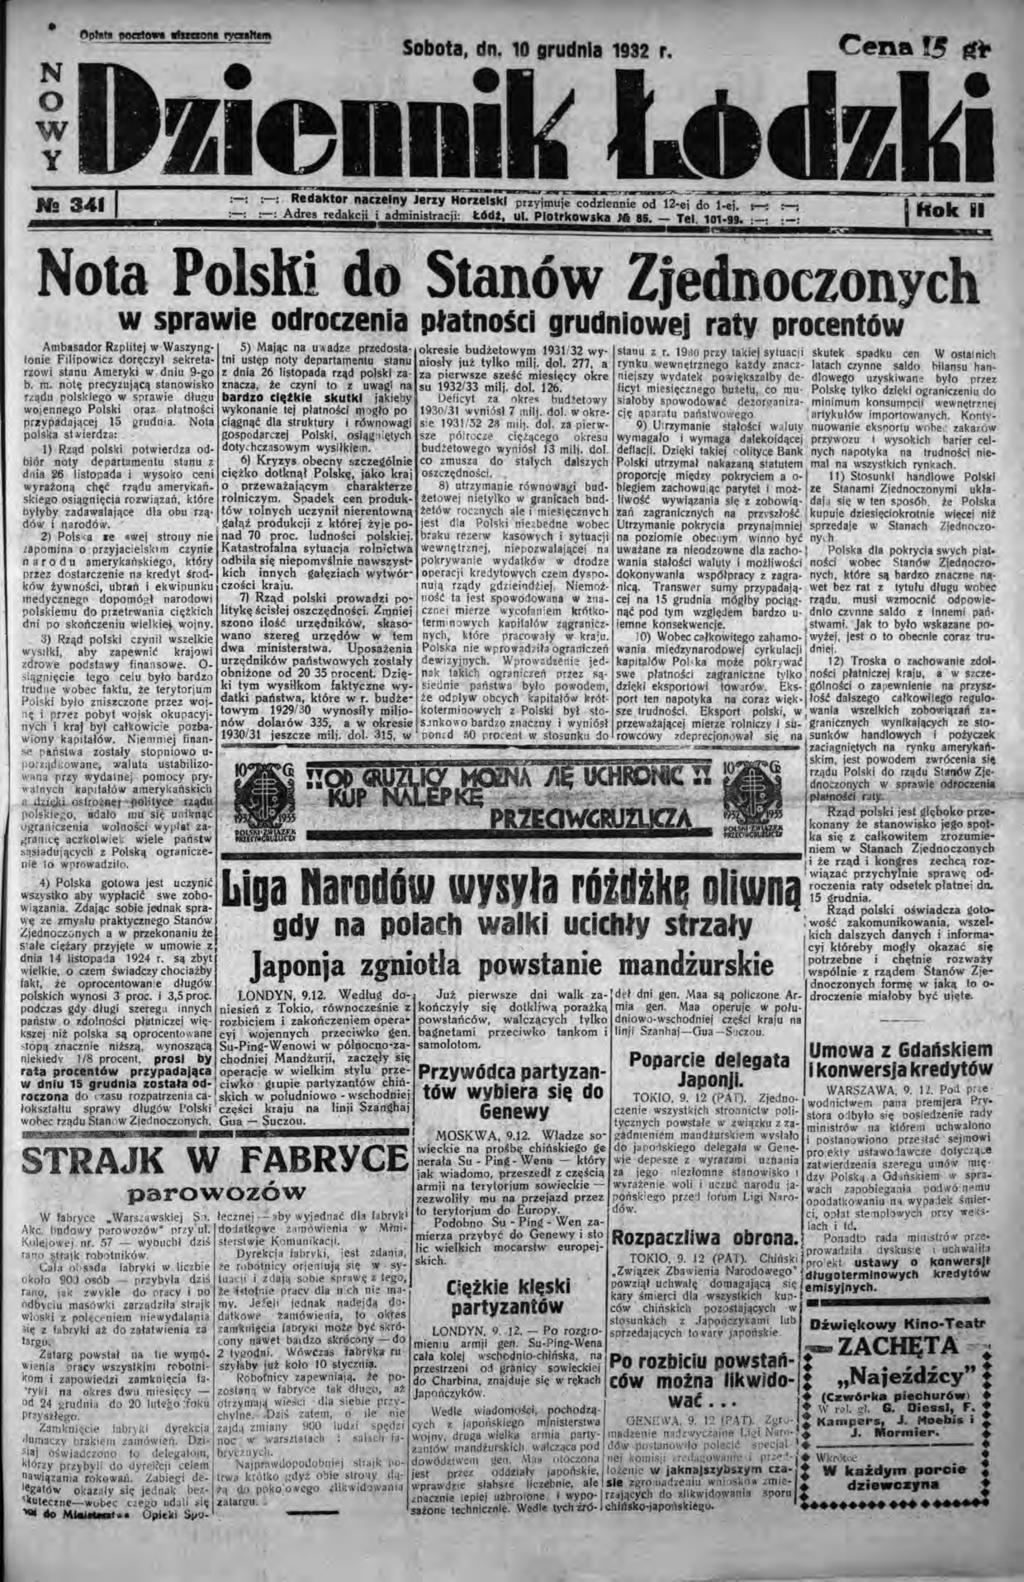 N O W Y Sobota, dn. 10 grudnia 1932 r. 001 : : Redaktor naczelny Jerzy Honelskl przyjmuje codziennie od 12-ej do l-ej, r-: :-: Adres redakcji i administracji: t.6dt, ul. Piotrkowska la U. ~Ol- :.